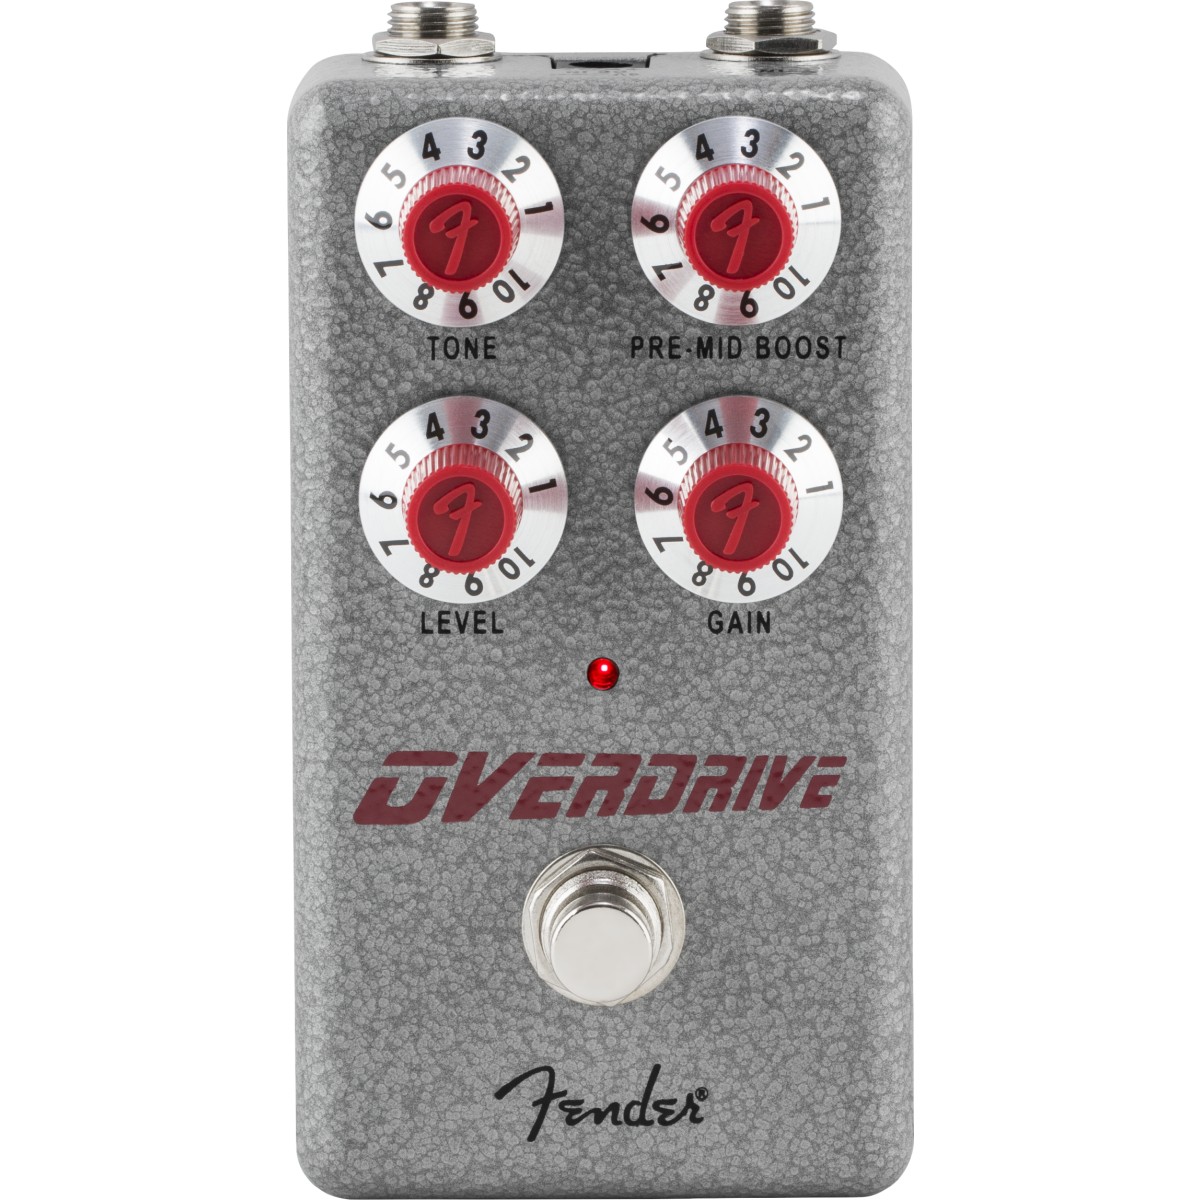 Pedale Fender Hammertone Overdrive 0234571000